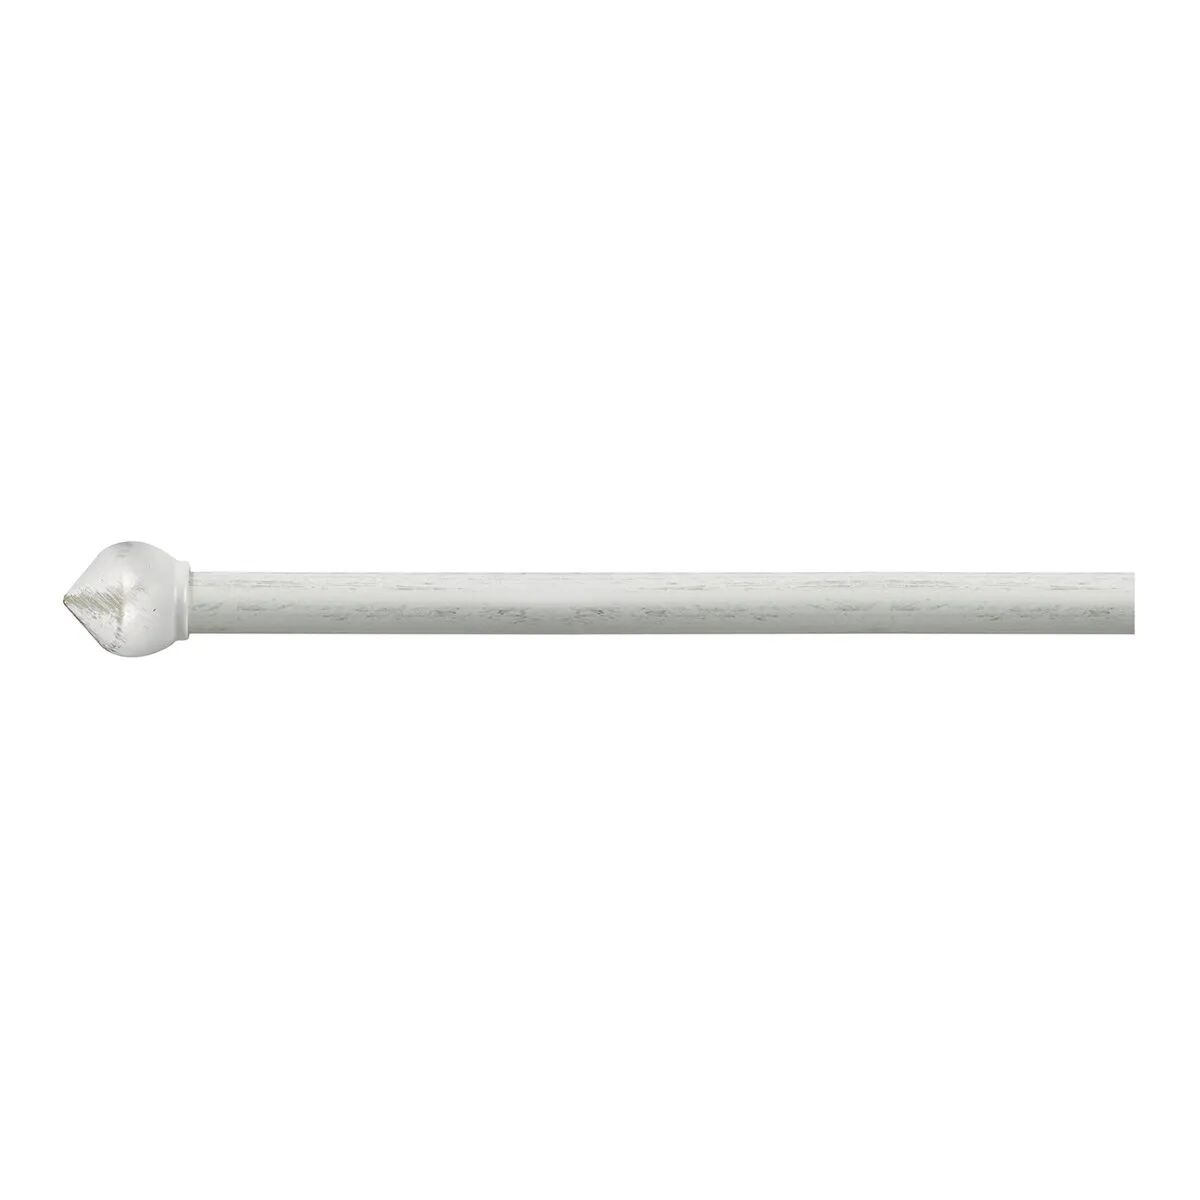 tecnomat bastone per tende bulbo Ø 20-17 mm 160-300 cm ferro avorio/oro 3 supporti